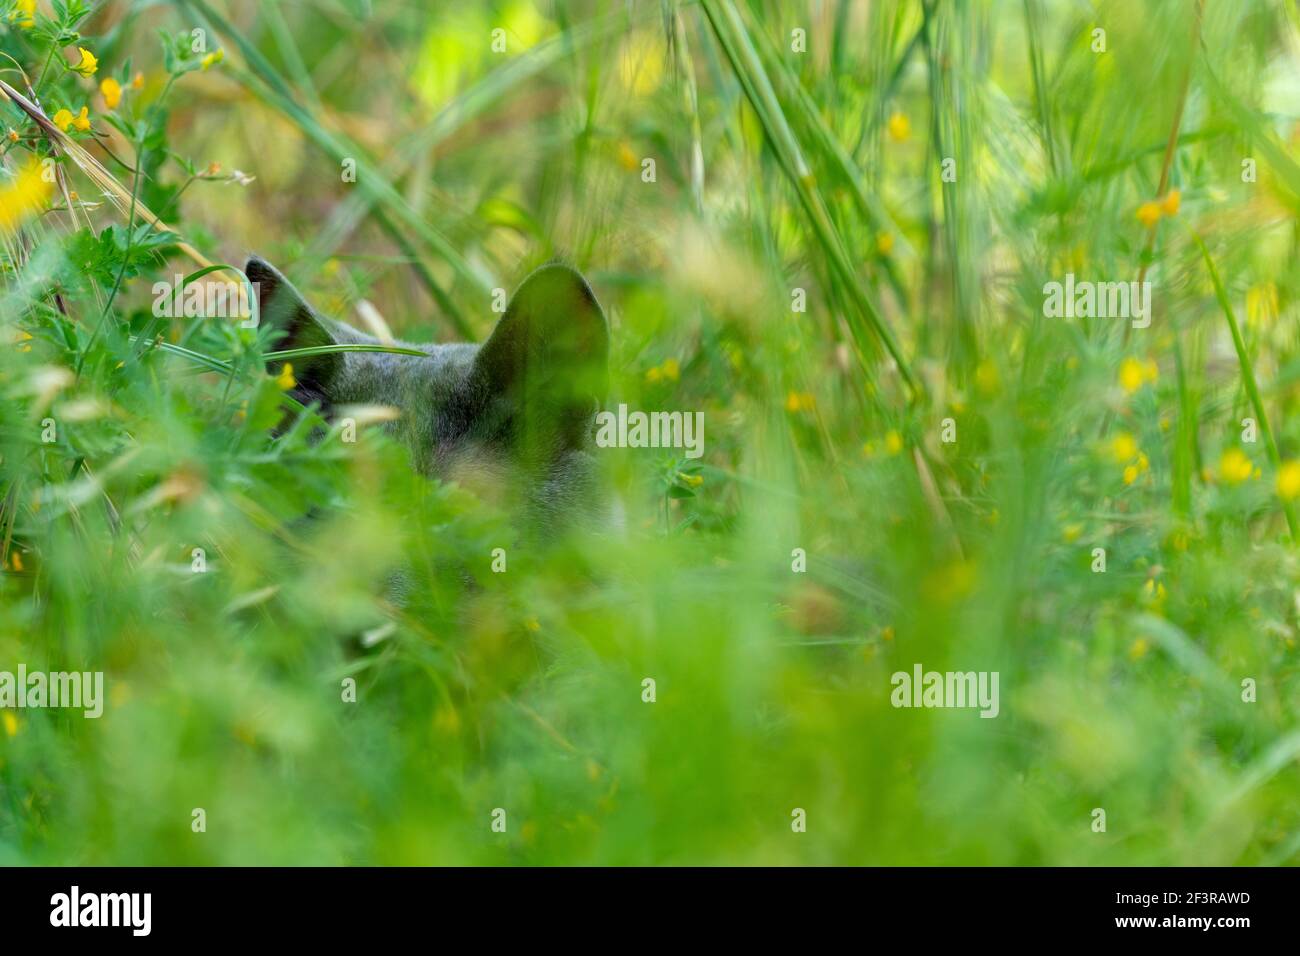 Un adorable chat gris est couché et se détend dans une herbe verte luxuriante au printemps. Nature et arrière-plan animal avec espace de copie. Banque D'Images